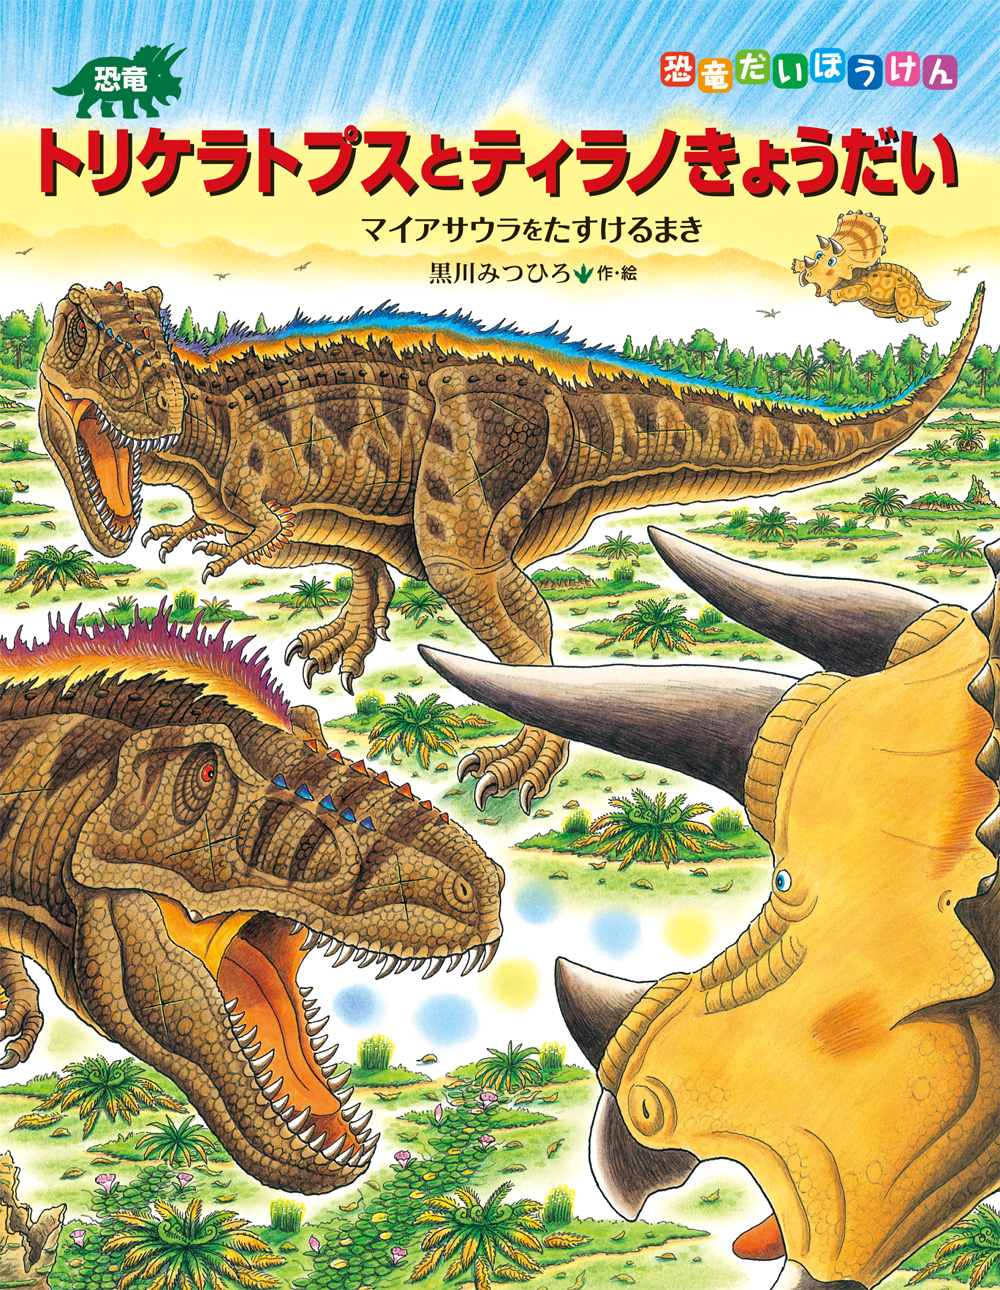 第３回気仙沼市図書館絵本原画展で<br>黒川みつひろさん『恐竜トリケラトプスとティラノきょうだい』の<br>原画が展示されます！